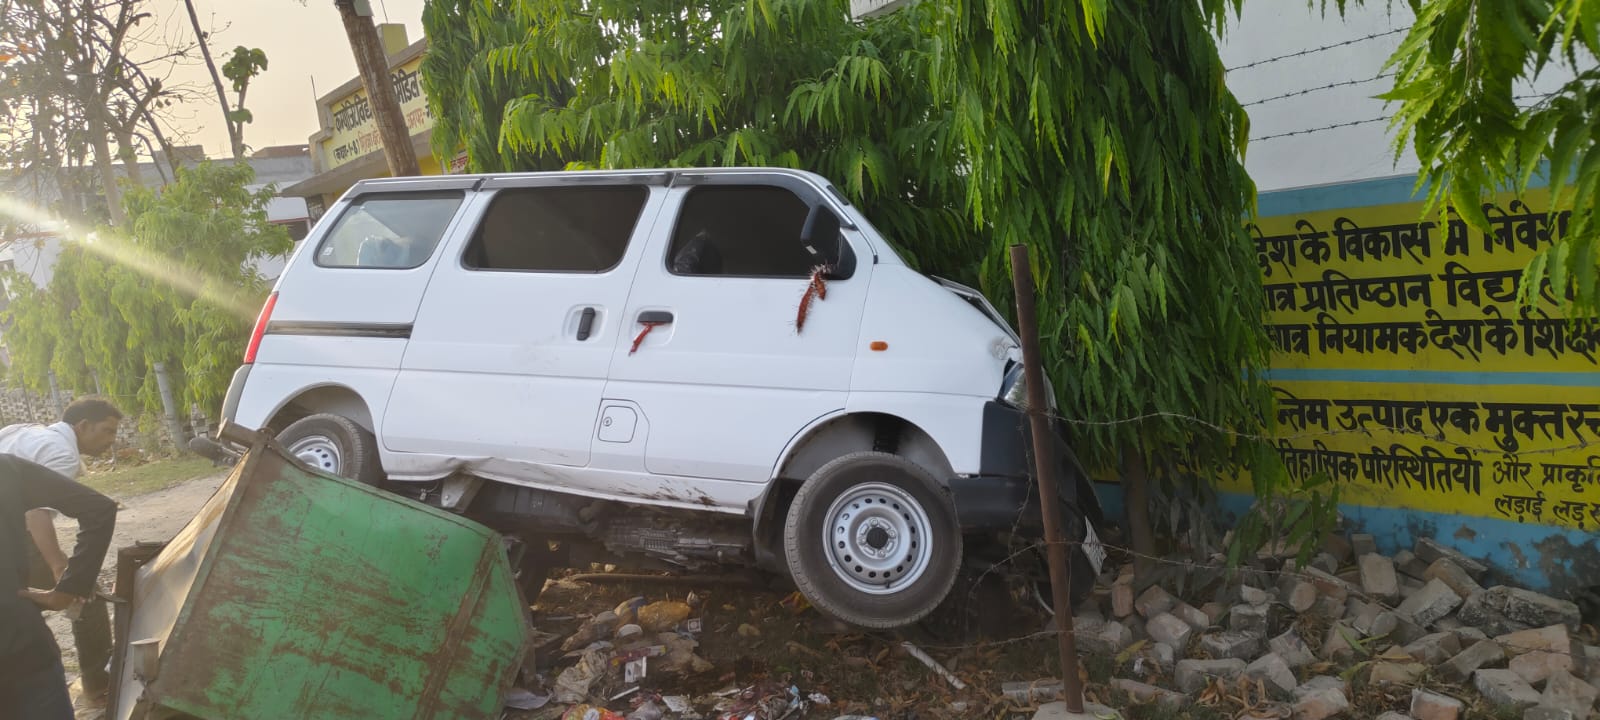 अनियंत्रित कार दीवार से टकराई बड़ा हादसा टला